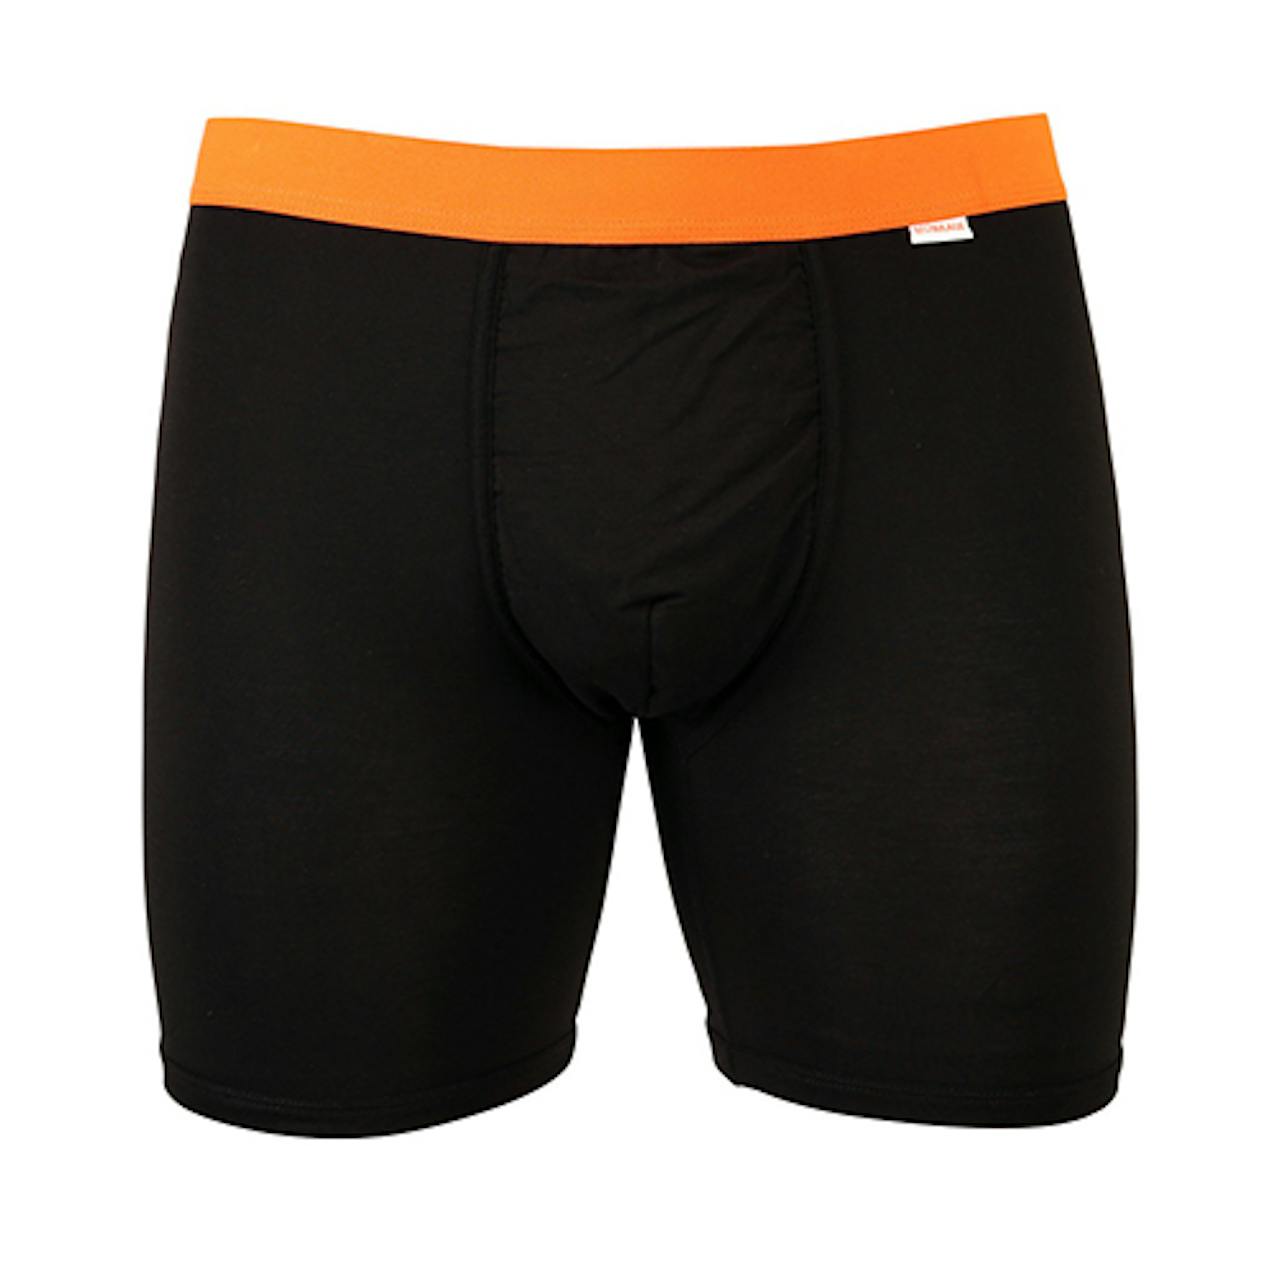 MyPakage Weekday Underwear - Ink/Orange